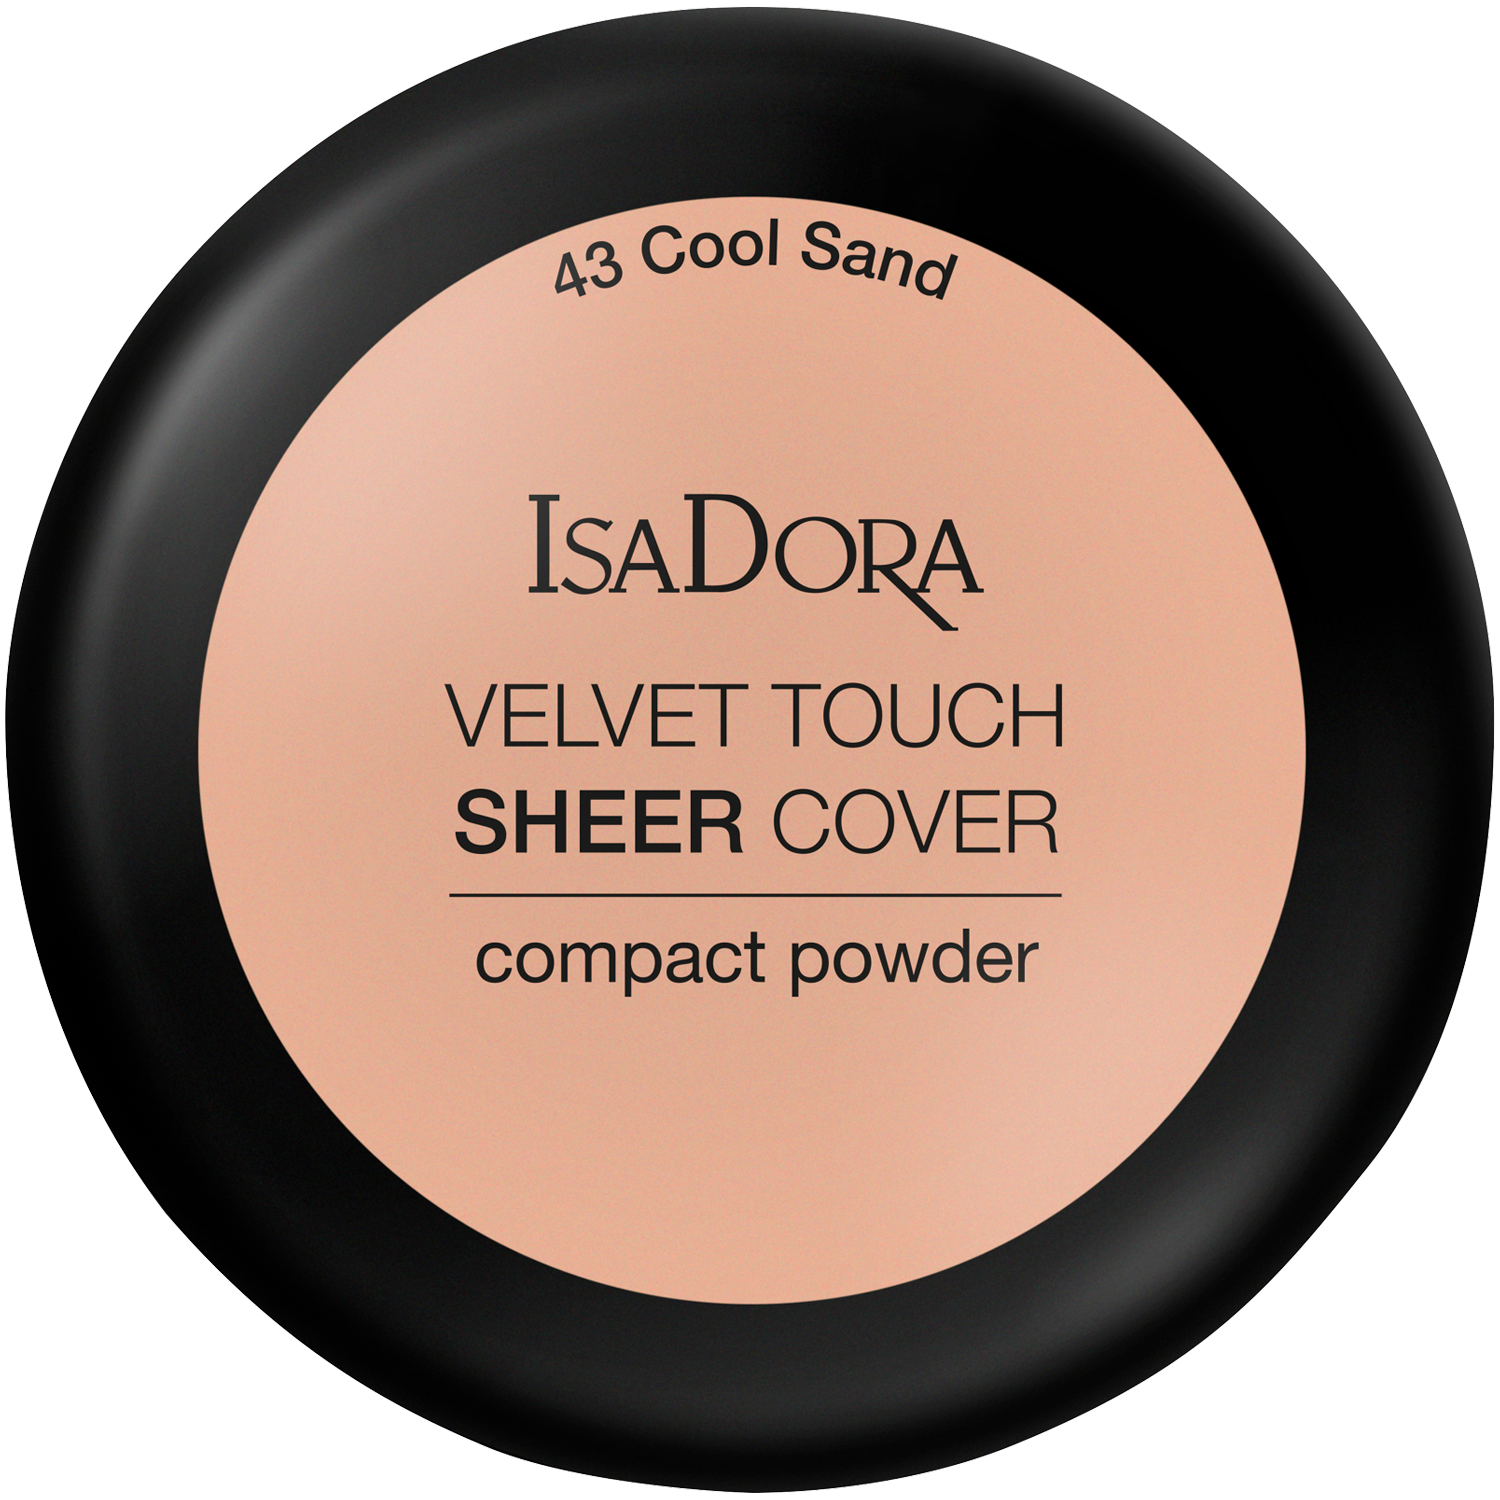 Пудра для лица 43 холодный песок Isadora Velvet Touch Sheer Cover, 7,5 гр пудра компактная spf 20 isadora velvet touch ultra cover compact powder 10 гр